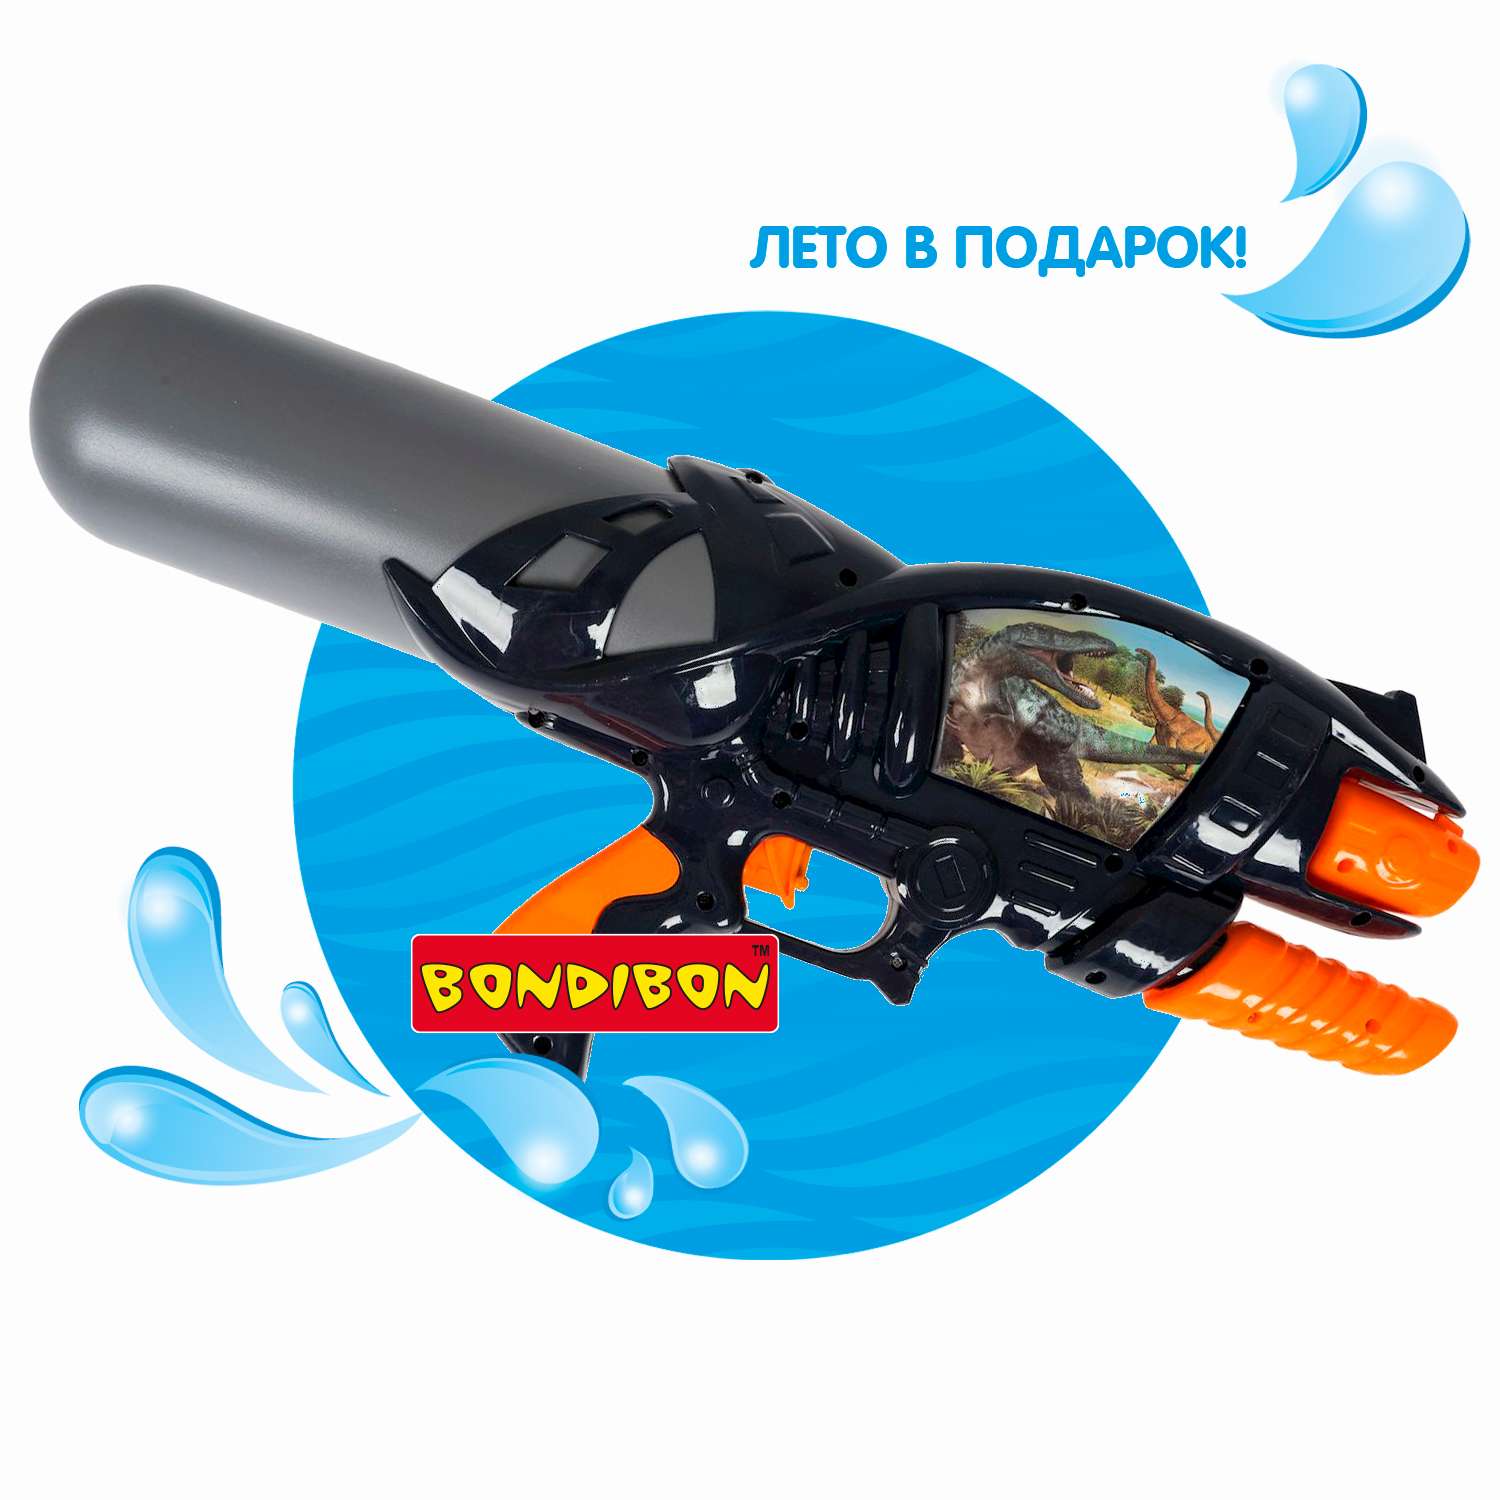 Водный пистолет с помпой BONDIBON черный 1100 мл стрельба 6-8 метров серия Наше Лето - фото 12